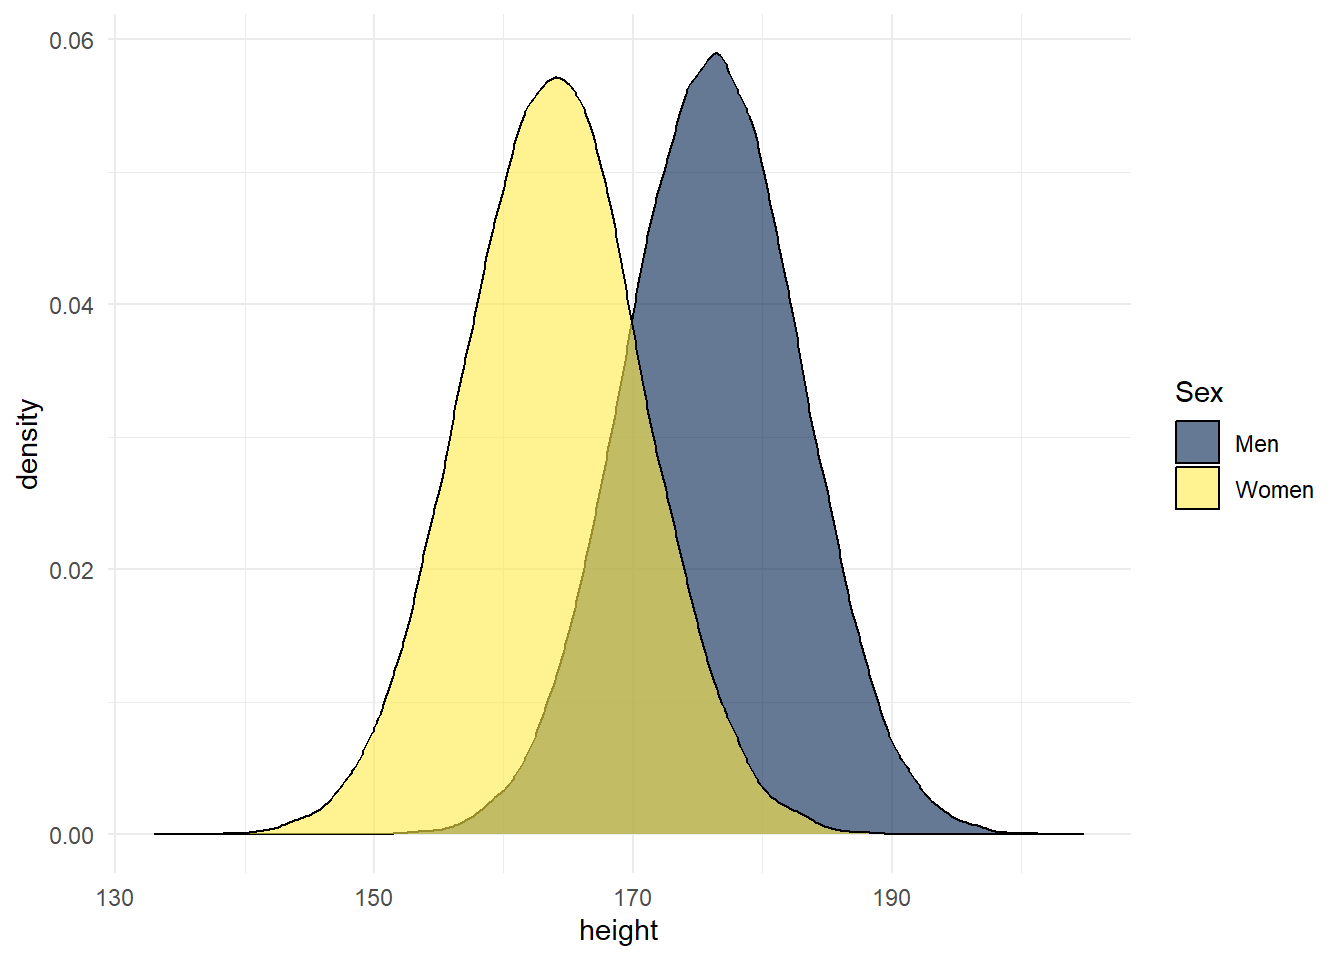 Simulation of Scottish height data